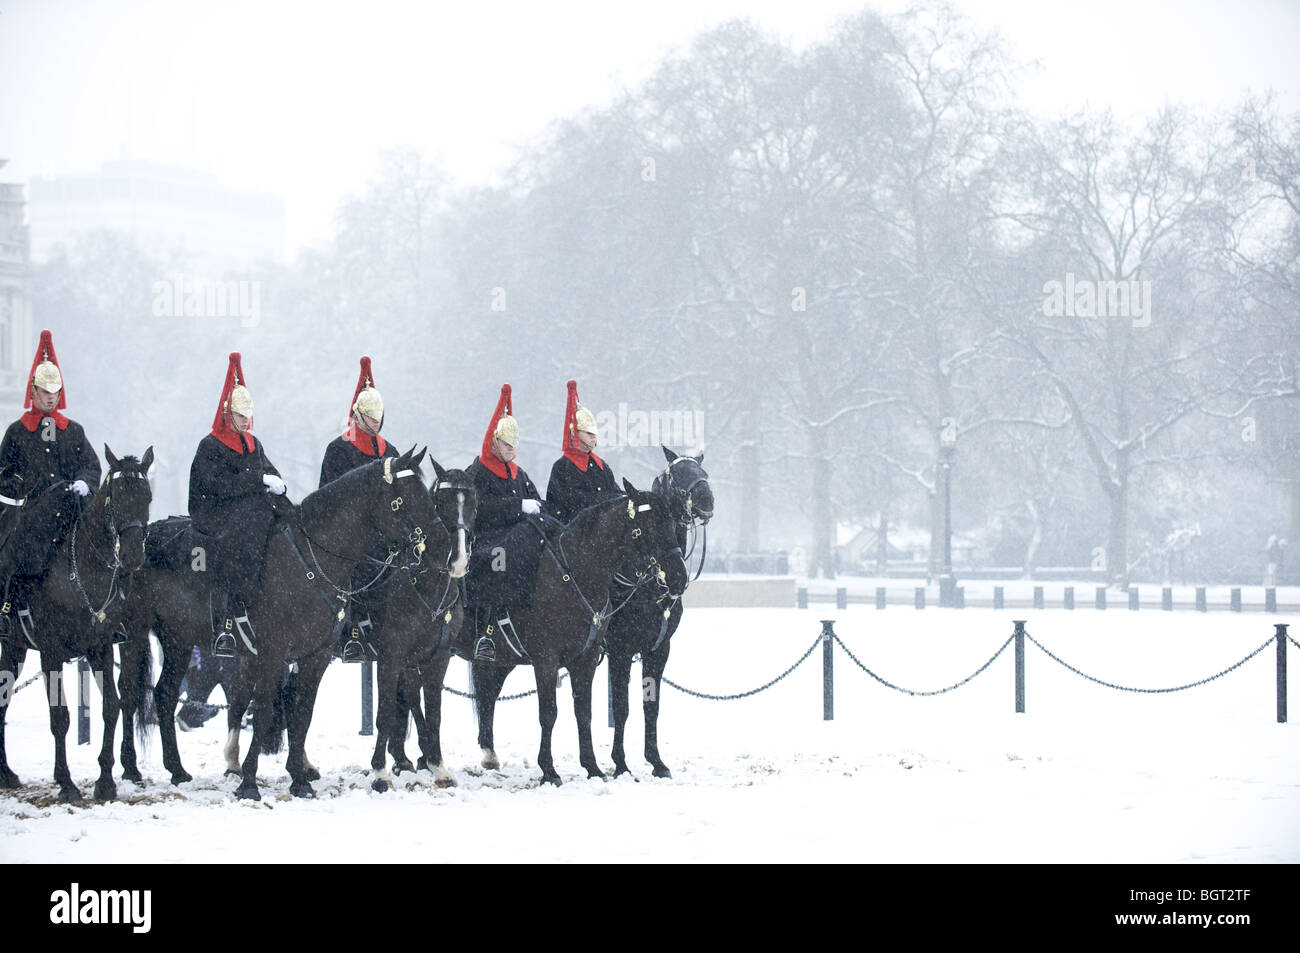 Le régiment de cavalerie Queen's Blues and Royals est situé sur des chevaux dans la neige, Londres, Angleterre Banque D'Images